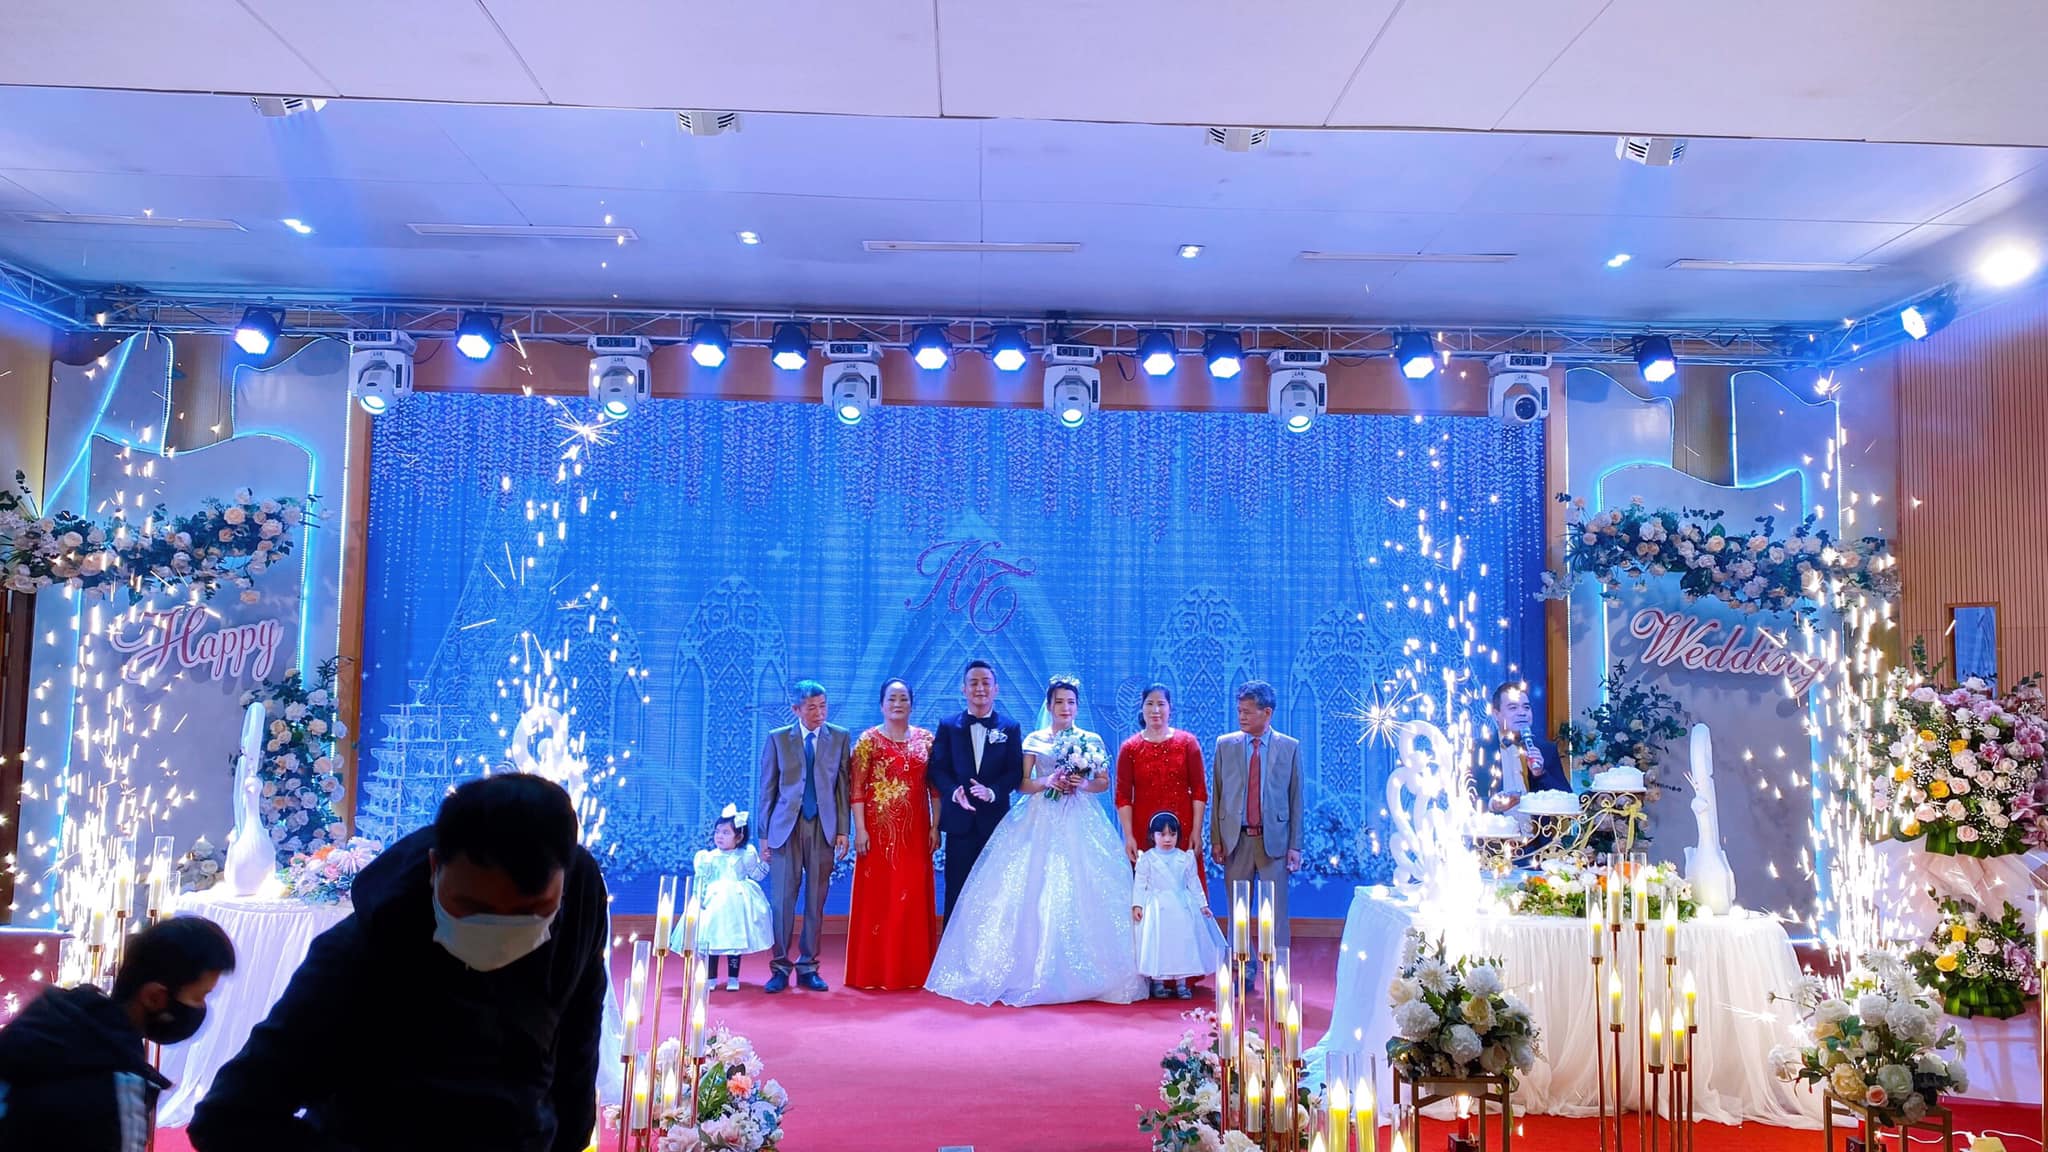 🎉  Grand Hotel - Diamond Palace xin được gửi những lời chúc tốt đẹp nhất, may mắn nhất tới cô dâu chú rể Minh Tâm - Lê Hiền.